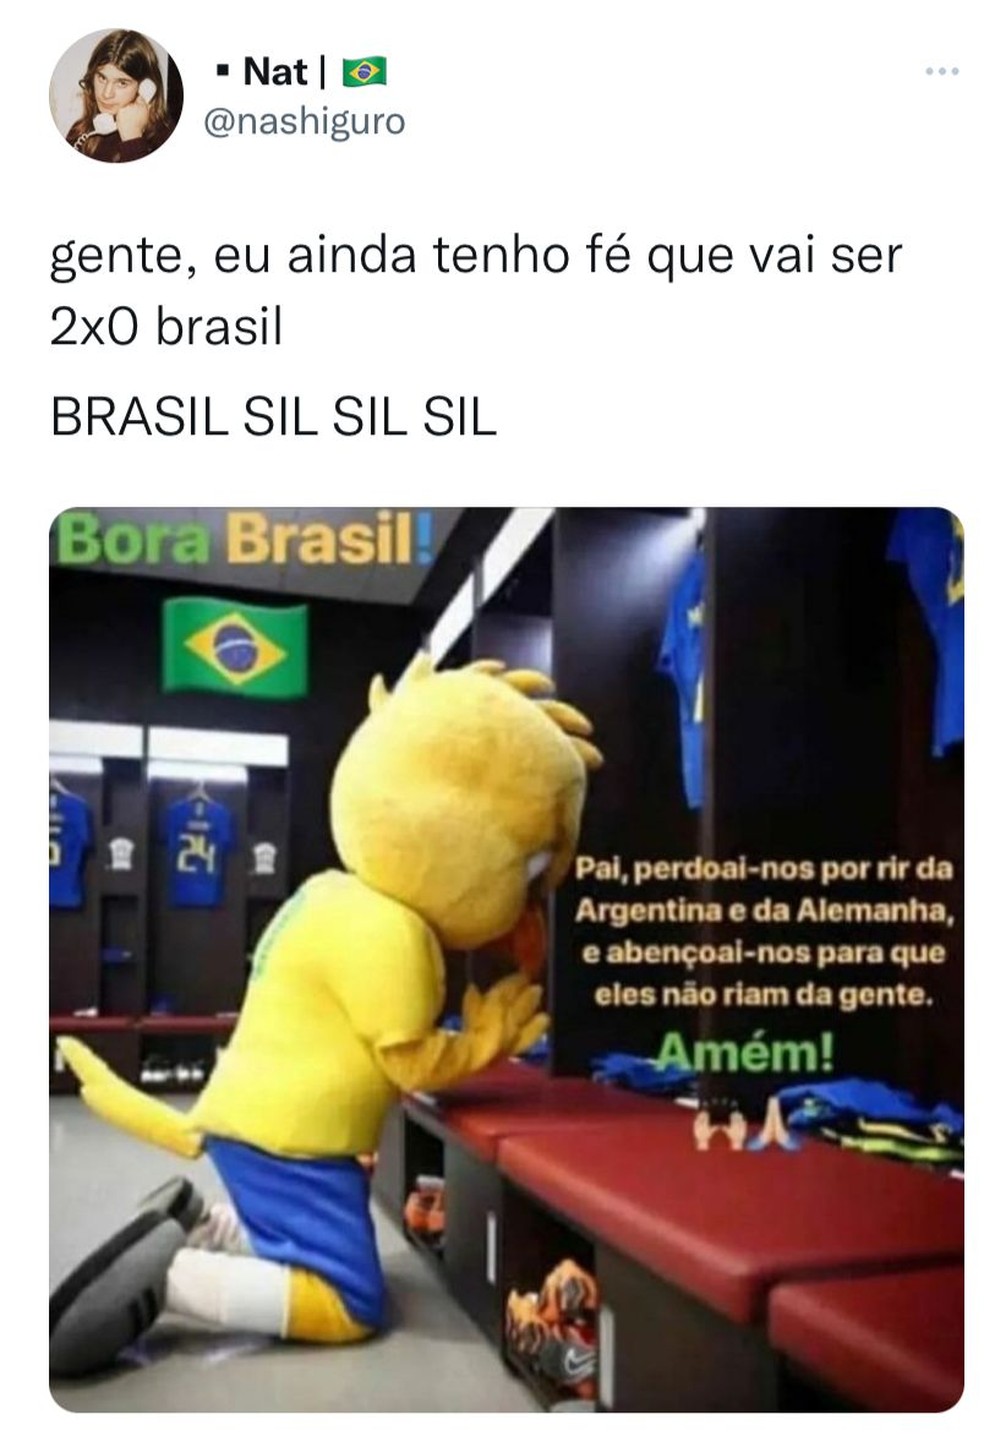 Jogo do Brasil contra Camarões na Copa do Mundo gera memes